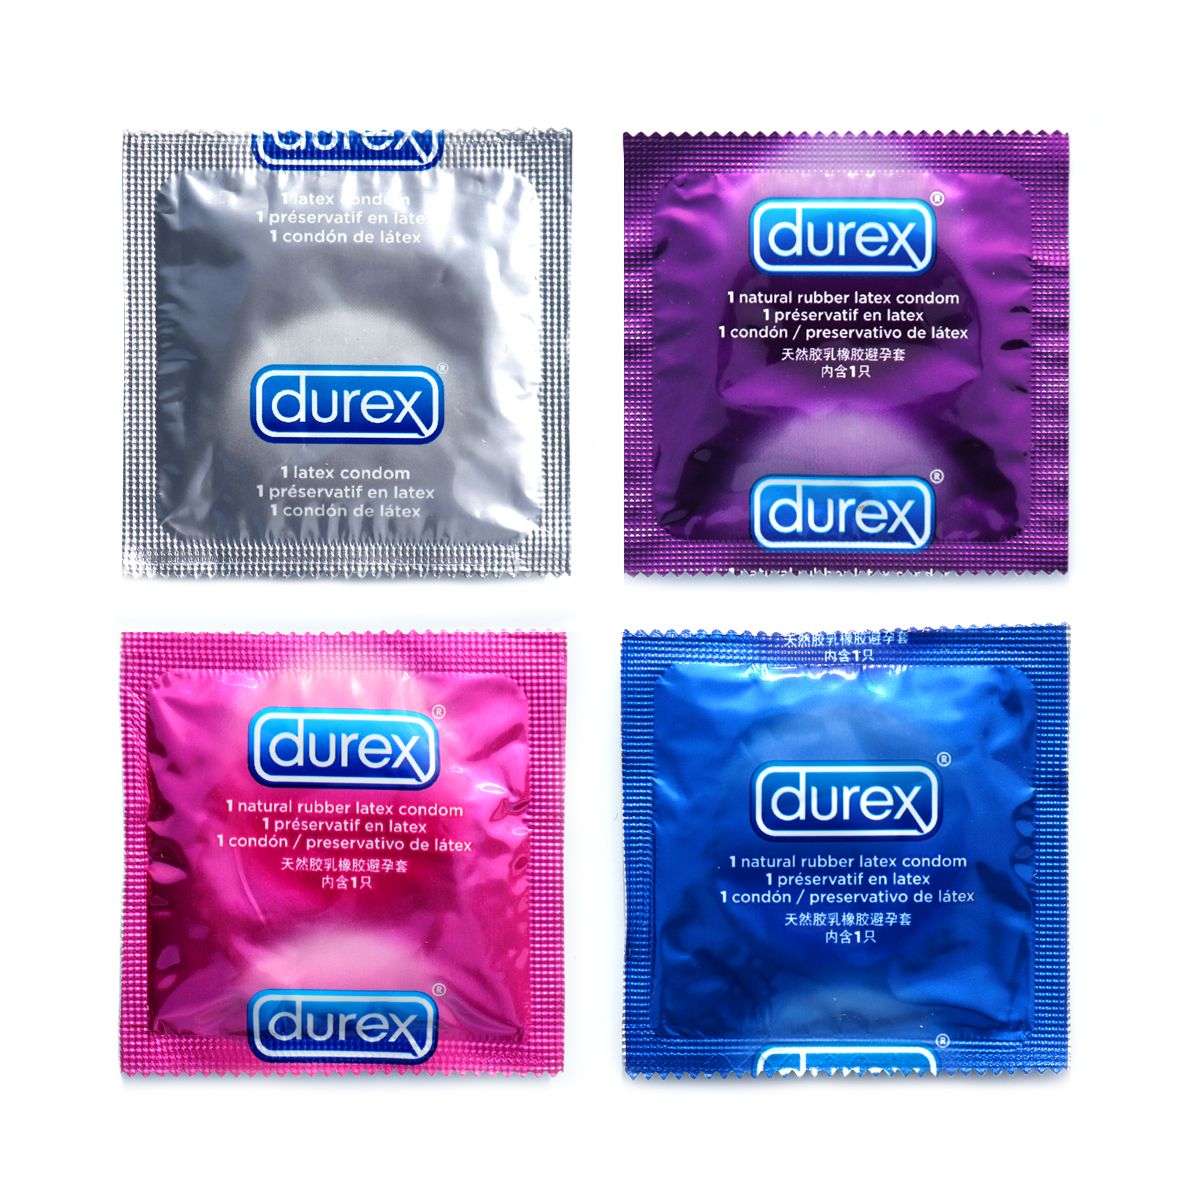 Durex brand condoms withdrawn in Russia Market